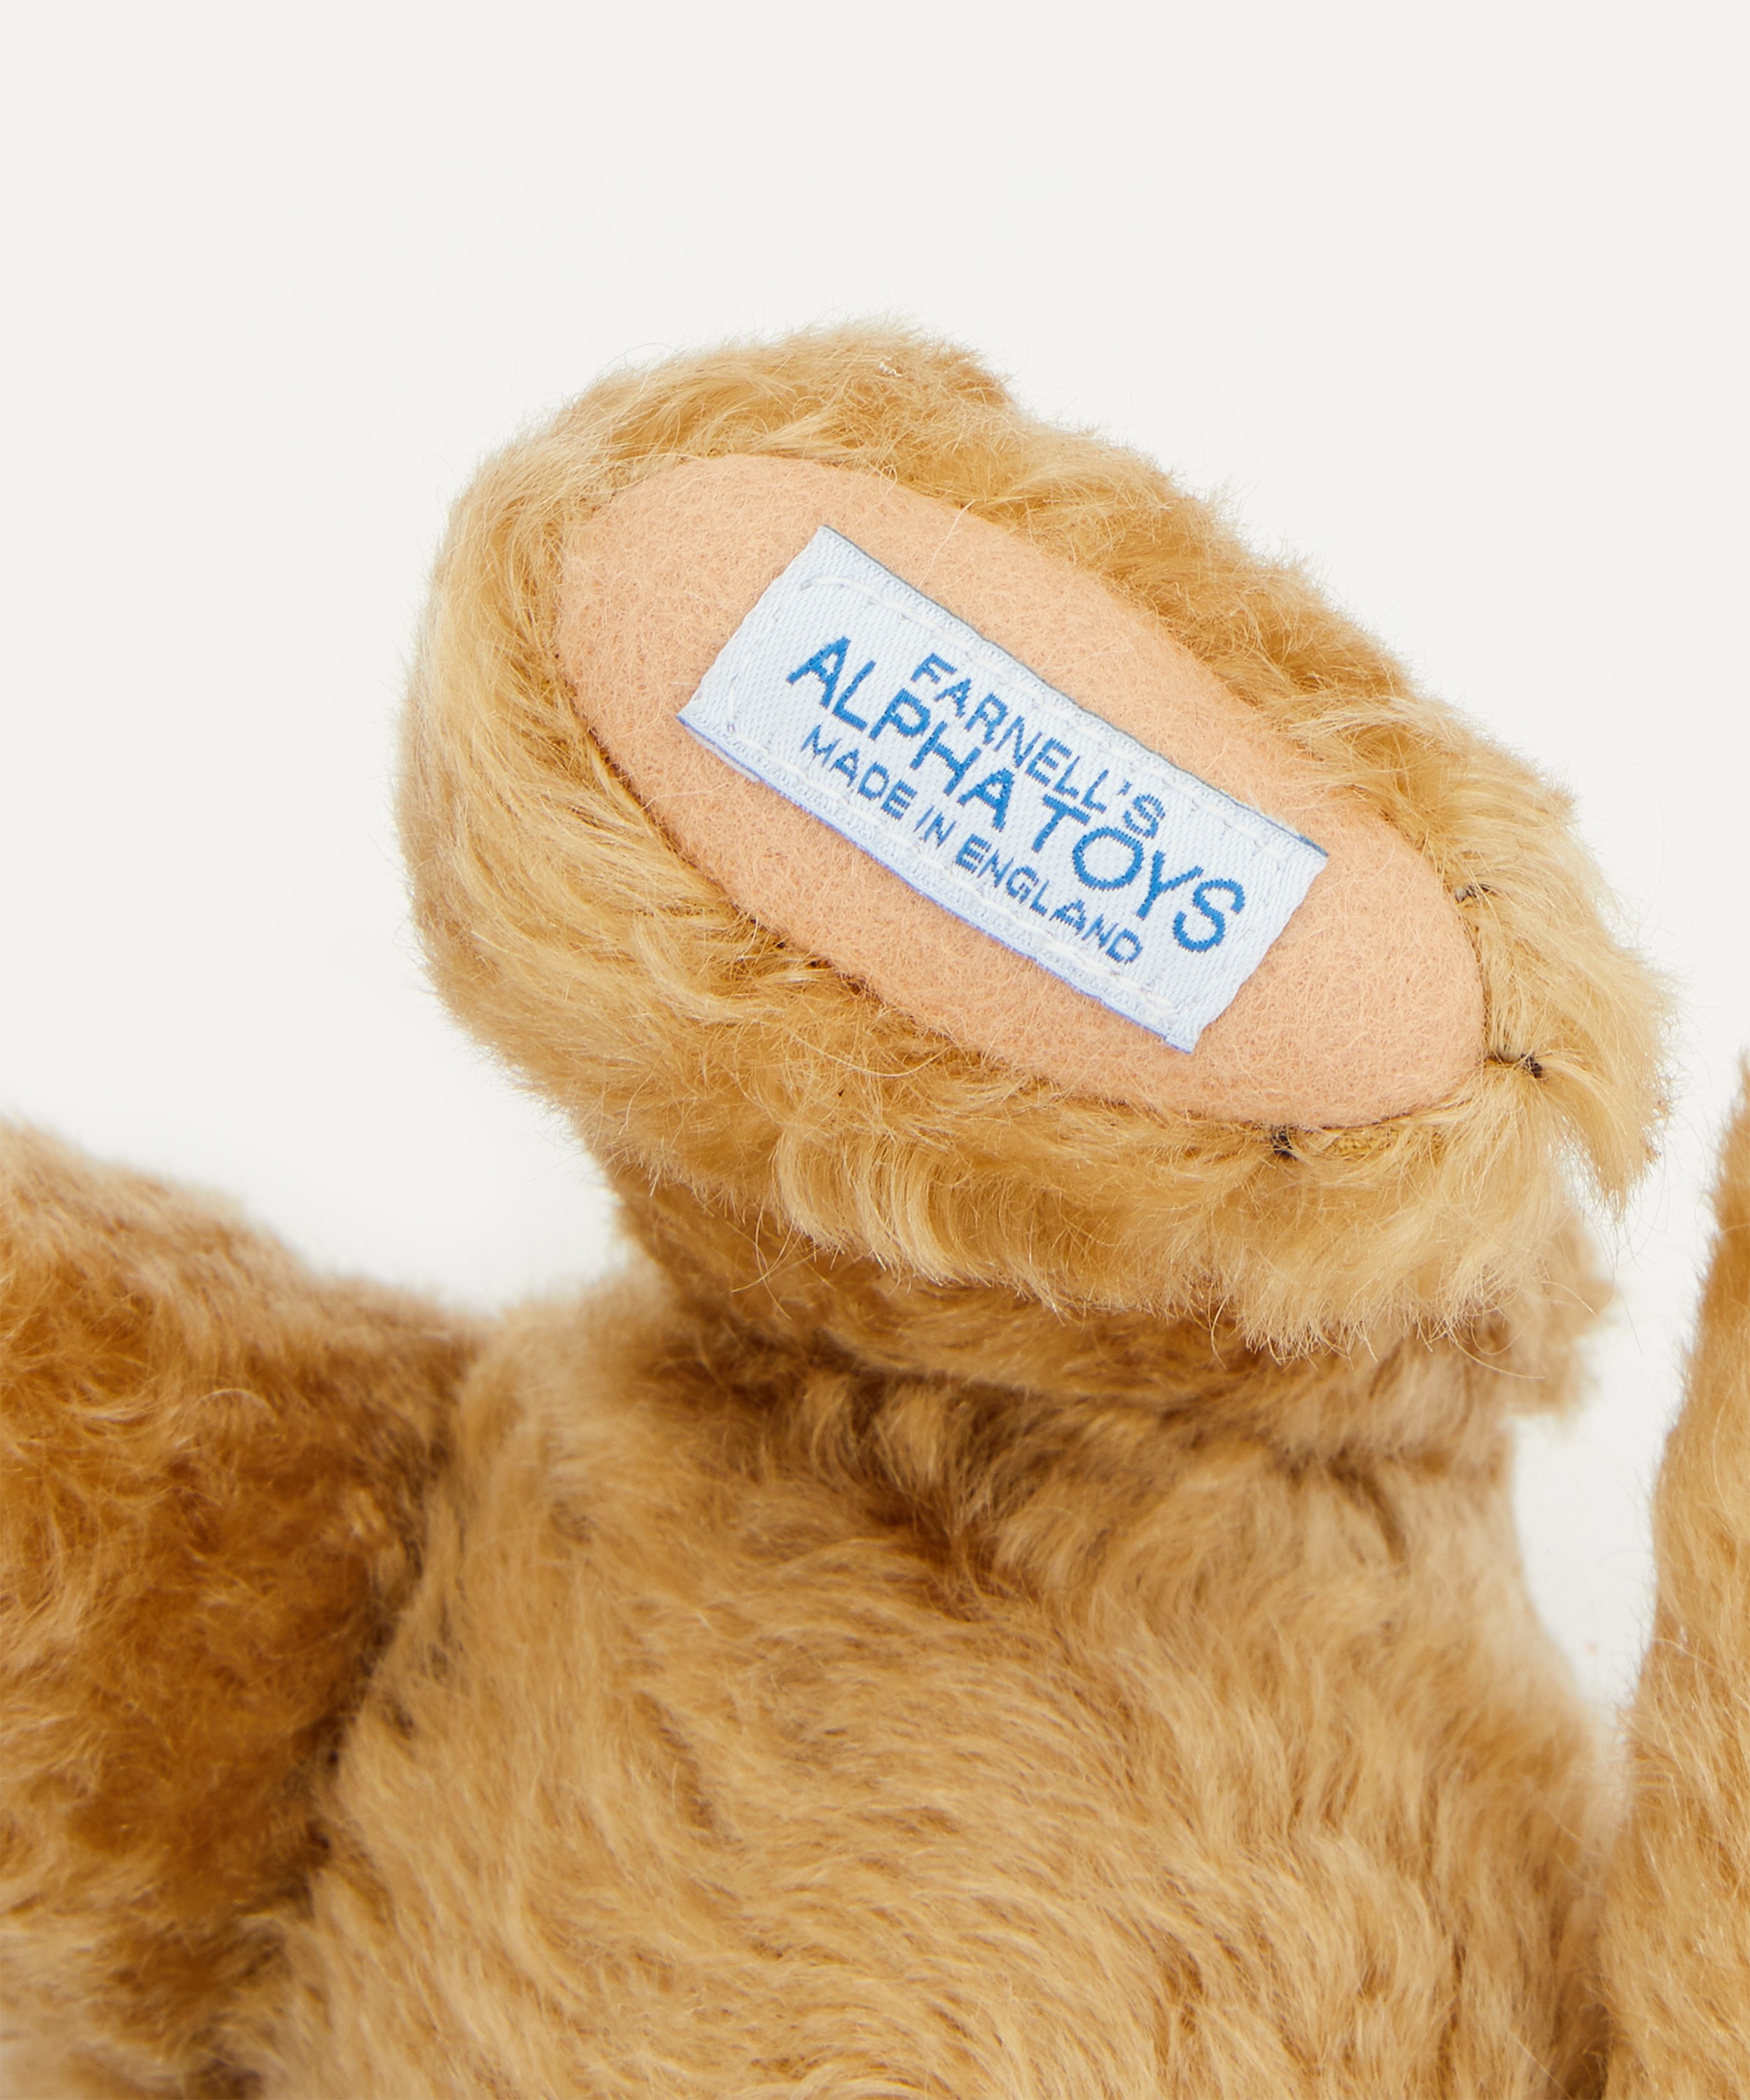 Merrythought Teddy Bear Special Edition (Edward Teddy Bear) Christopher  Robin's Bear – Britannical